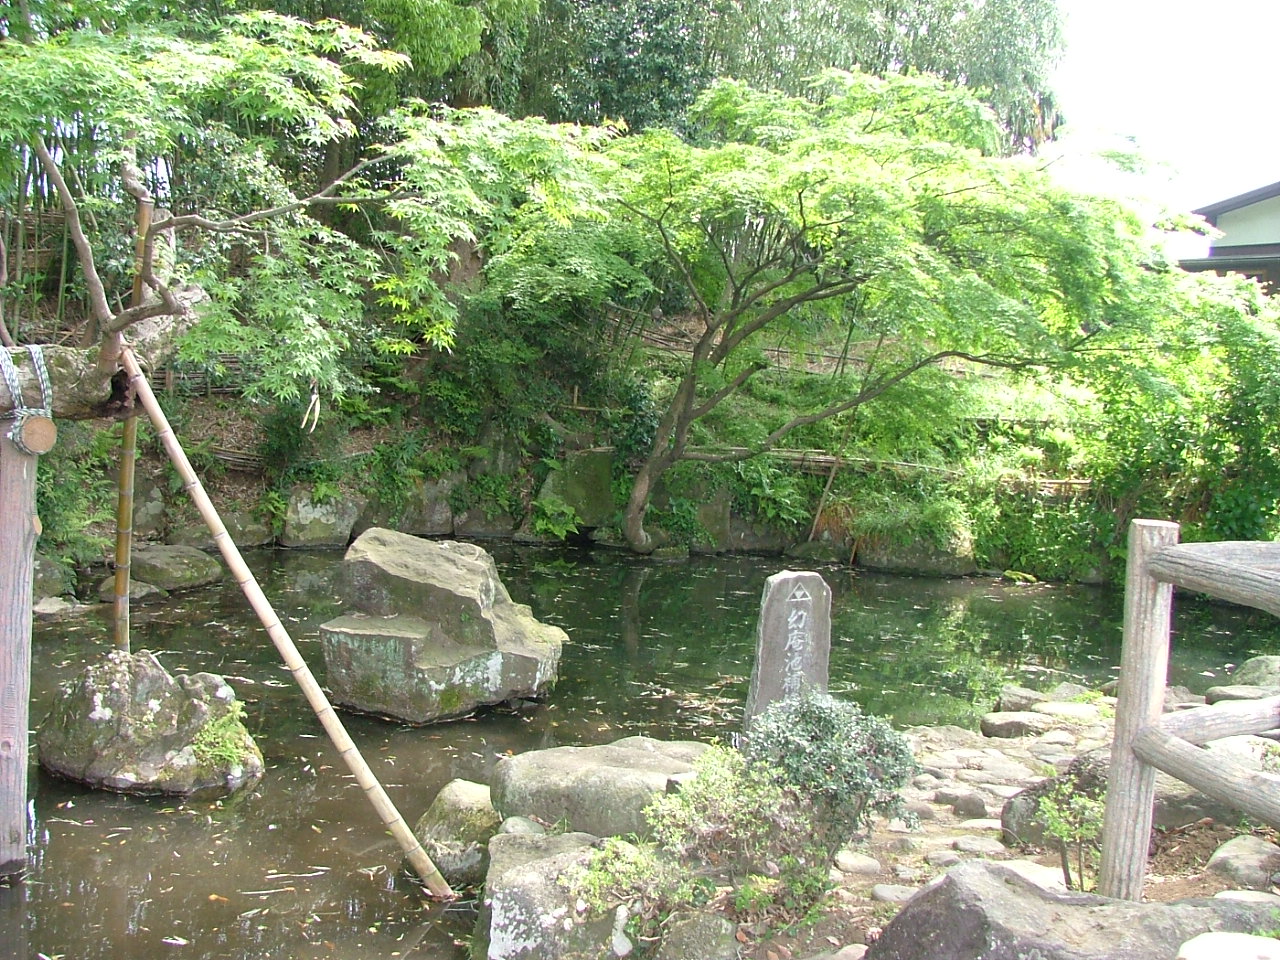 小田原市久野の北条幻庵屋敷跡にある幻庵作庭園。まちの至るところに、北条氏の痕跡が残る。